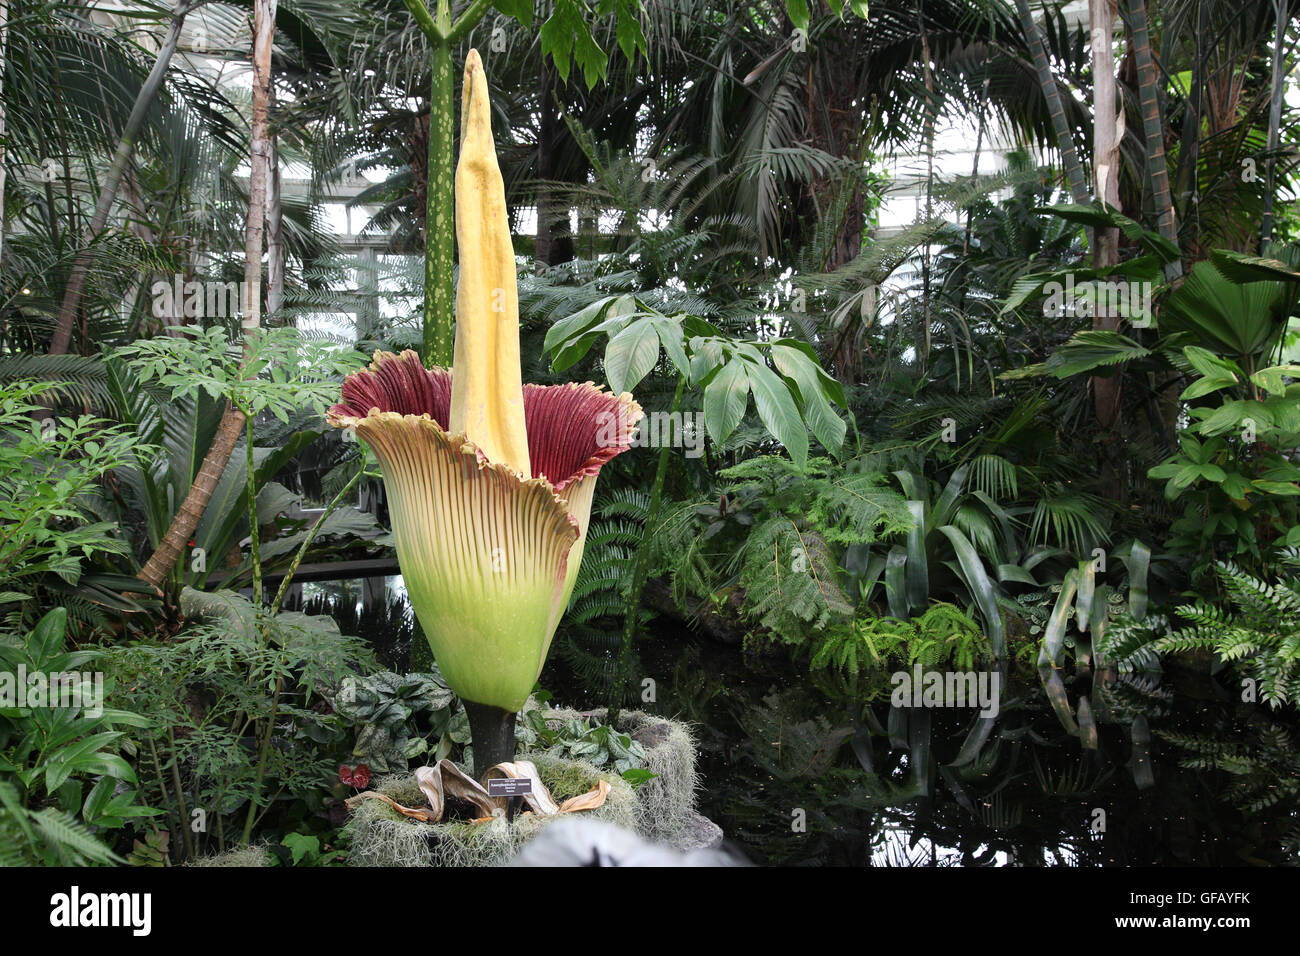 Bronx, NY, USA. 29 juillet 2016. La fleur cadavre est exposée dans le New York Botanical Garden's Haupt Conservatory durant son bref cycle de floraison. Wanda Lotus/Alamy Live News Banque D'Images